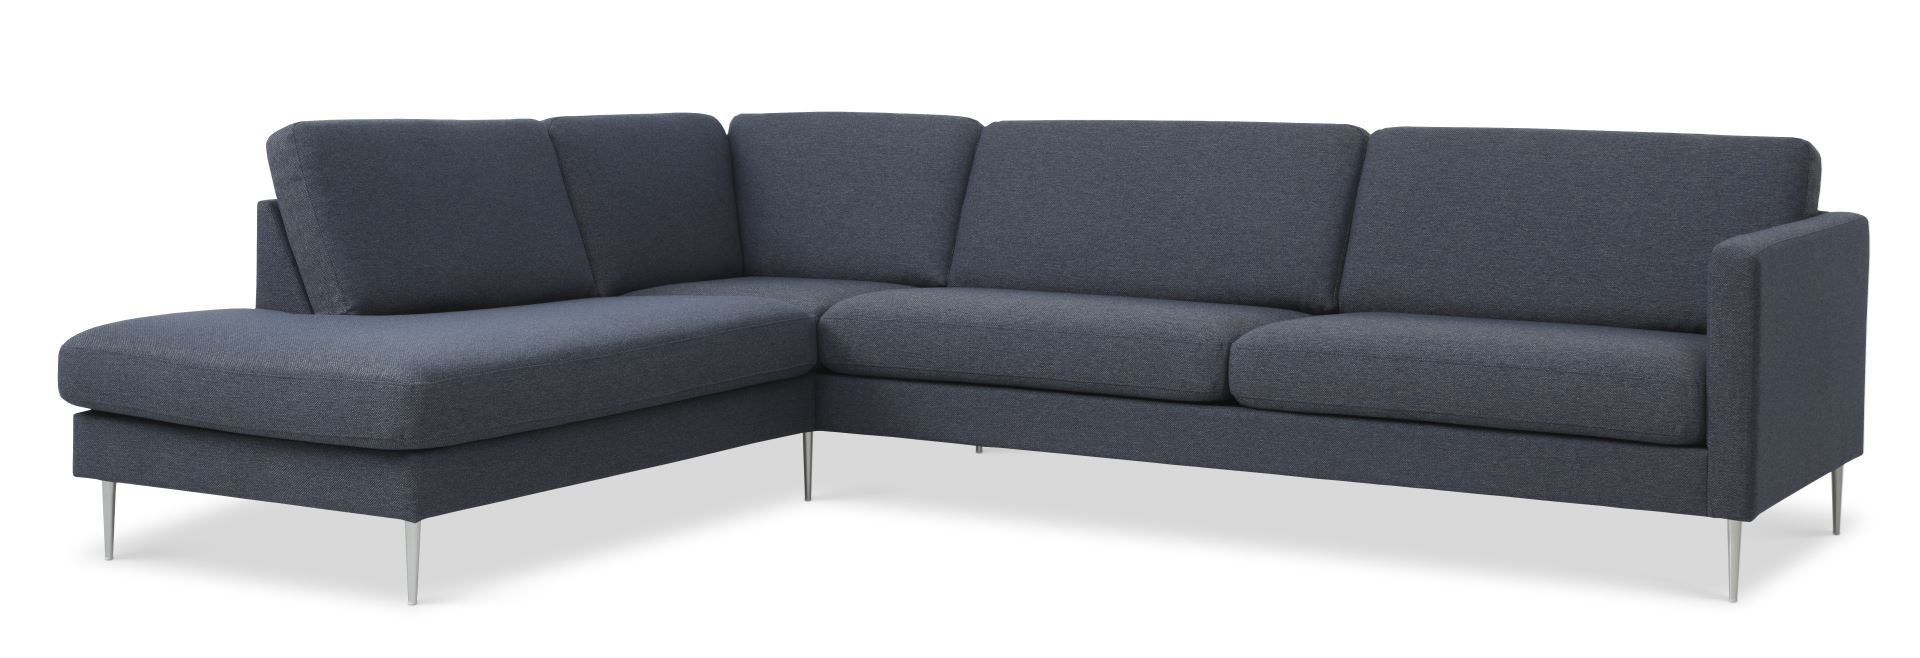 Ask sæt 60 stor OE sofa, m. venstre chaiselong - navy blå polyester stof og børstet aluminium